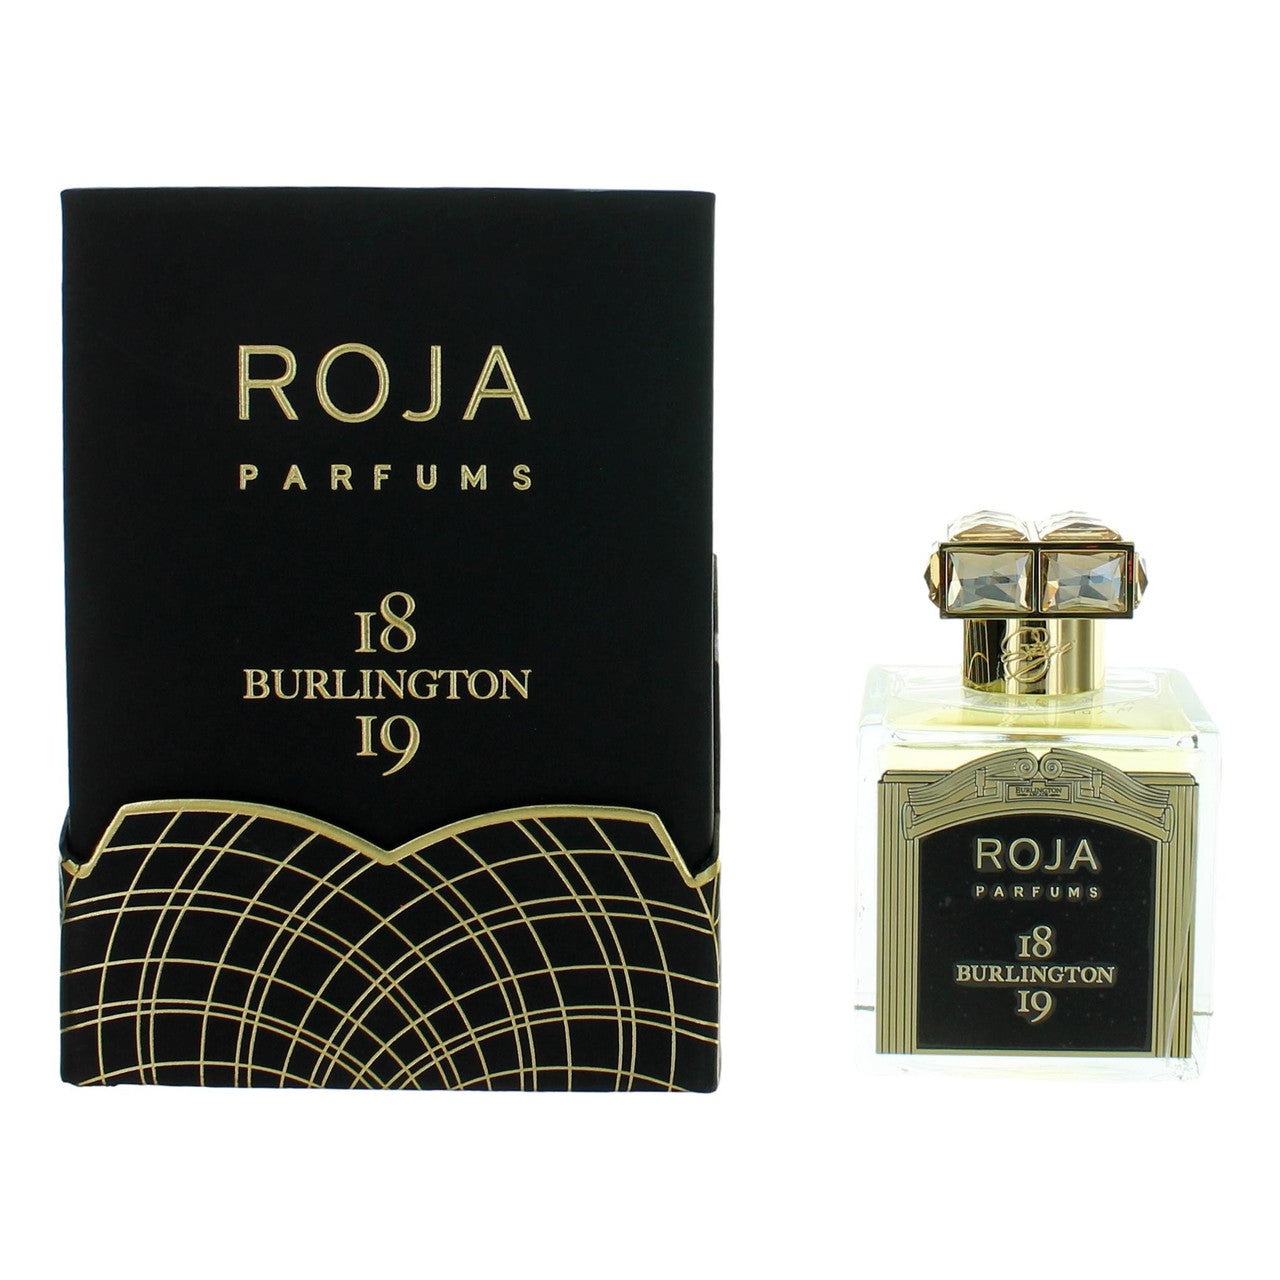 3.4 oz bottle of 1819 Burlington by Roja Parfums